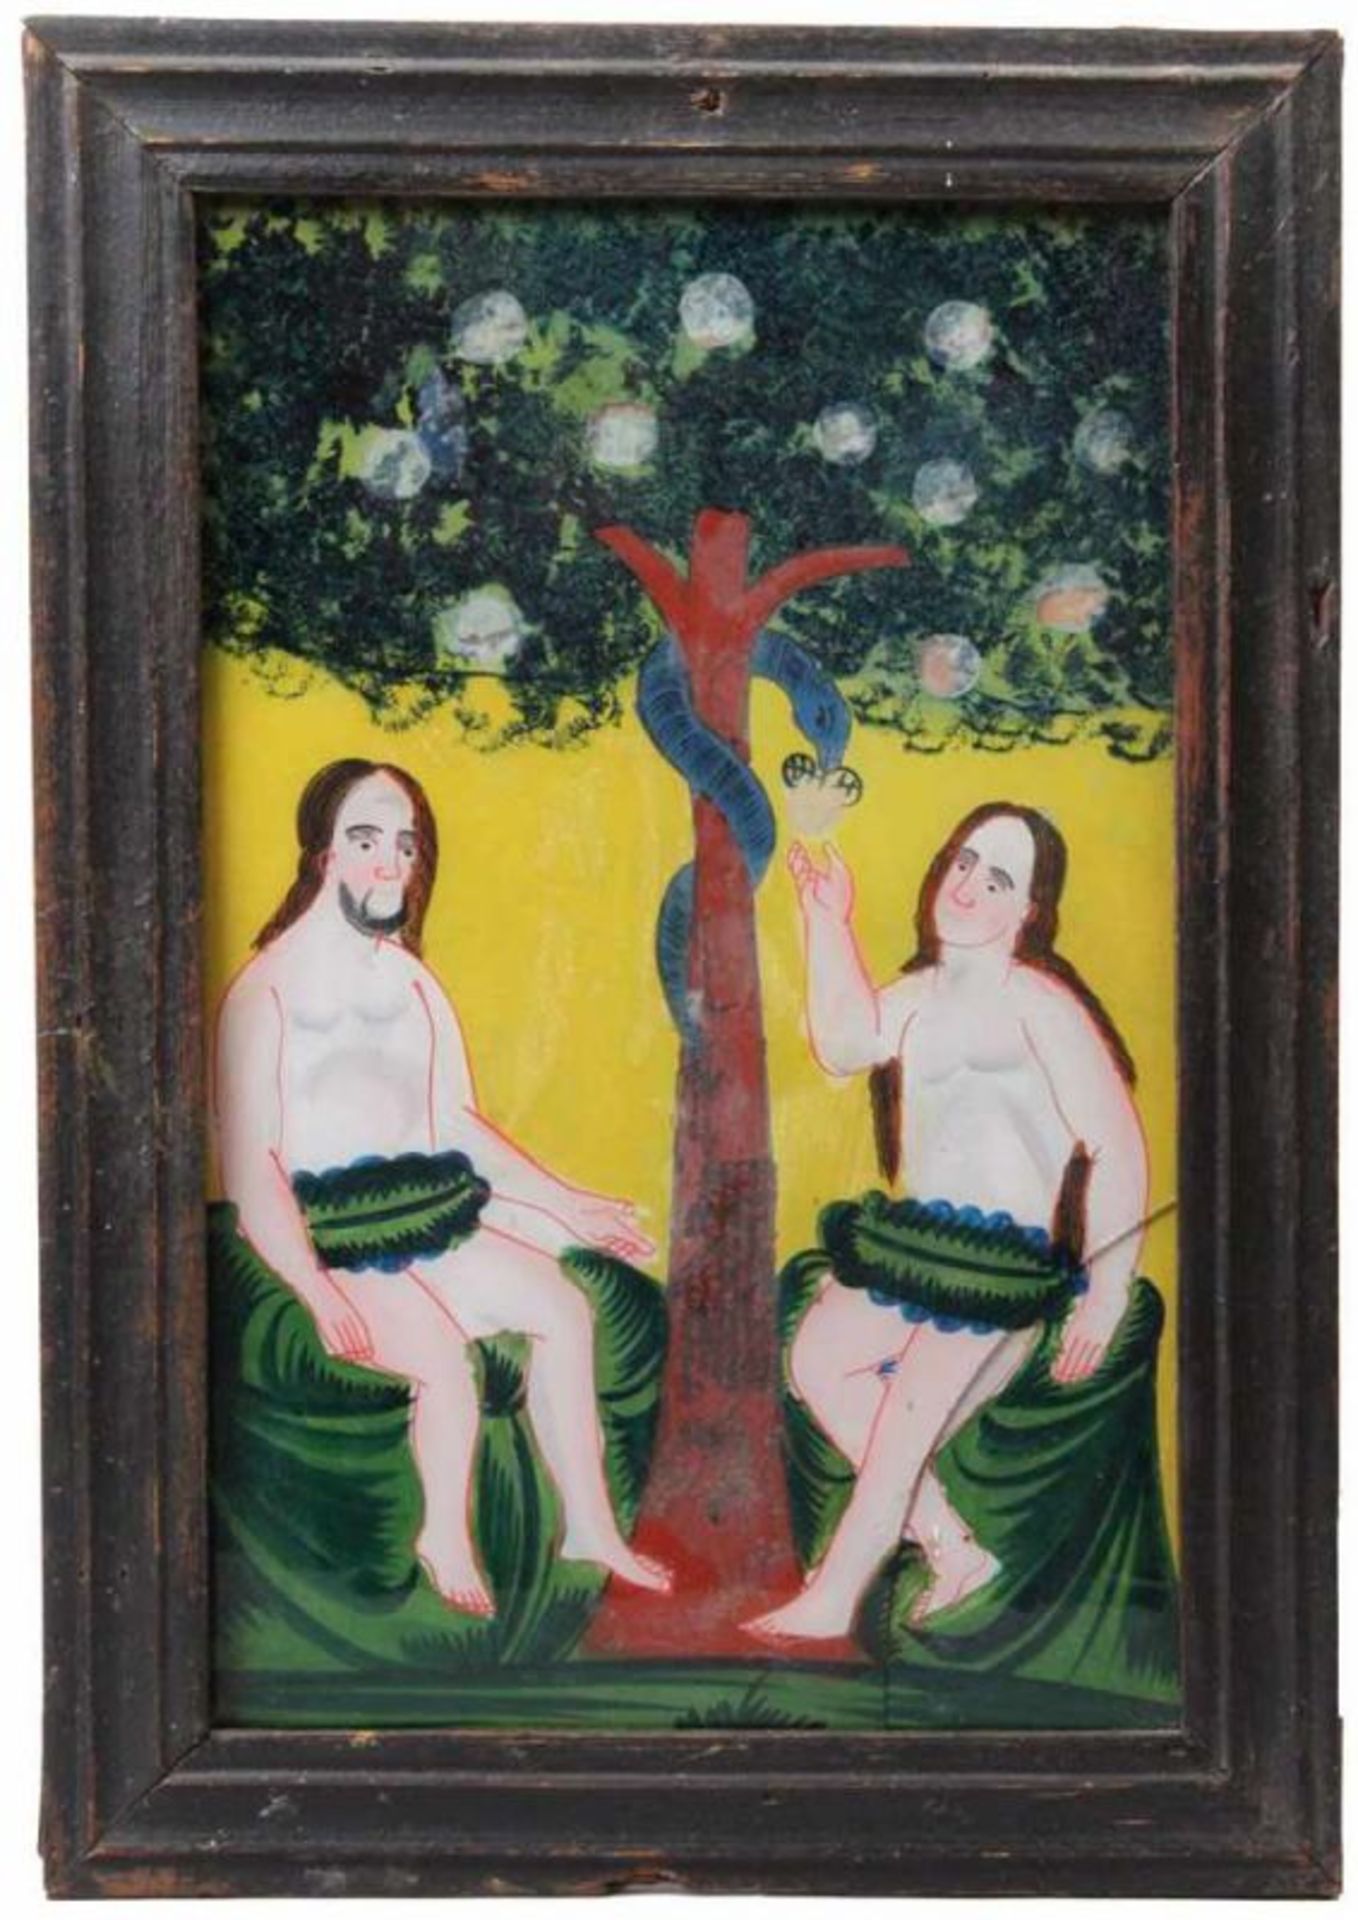 Hinterglasbild.Wohl Sandl, 19. Jh. Adam und Eva am Baum der Erkenntnis 30,5 x 19 cm. Schwarzer